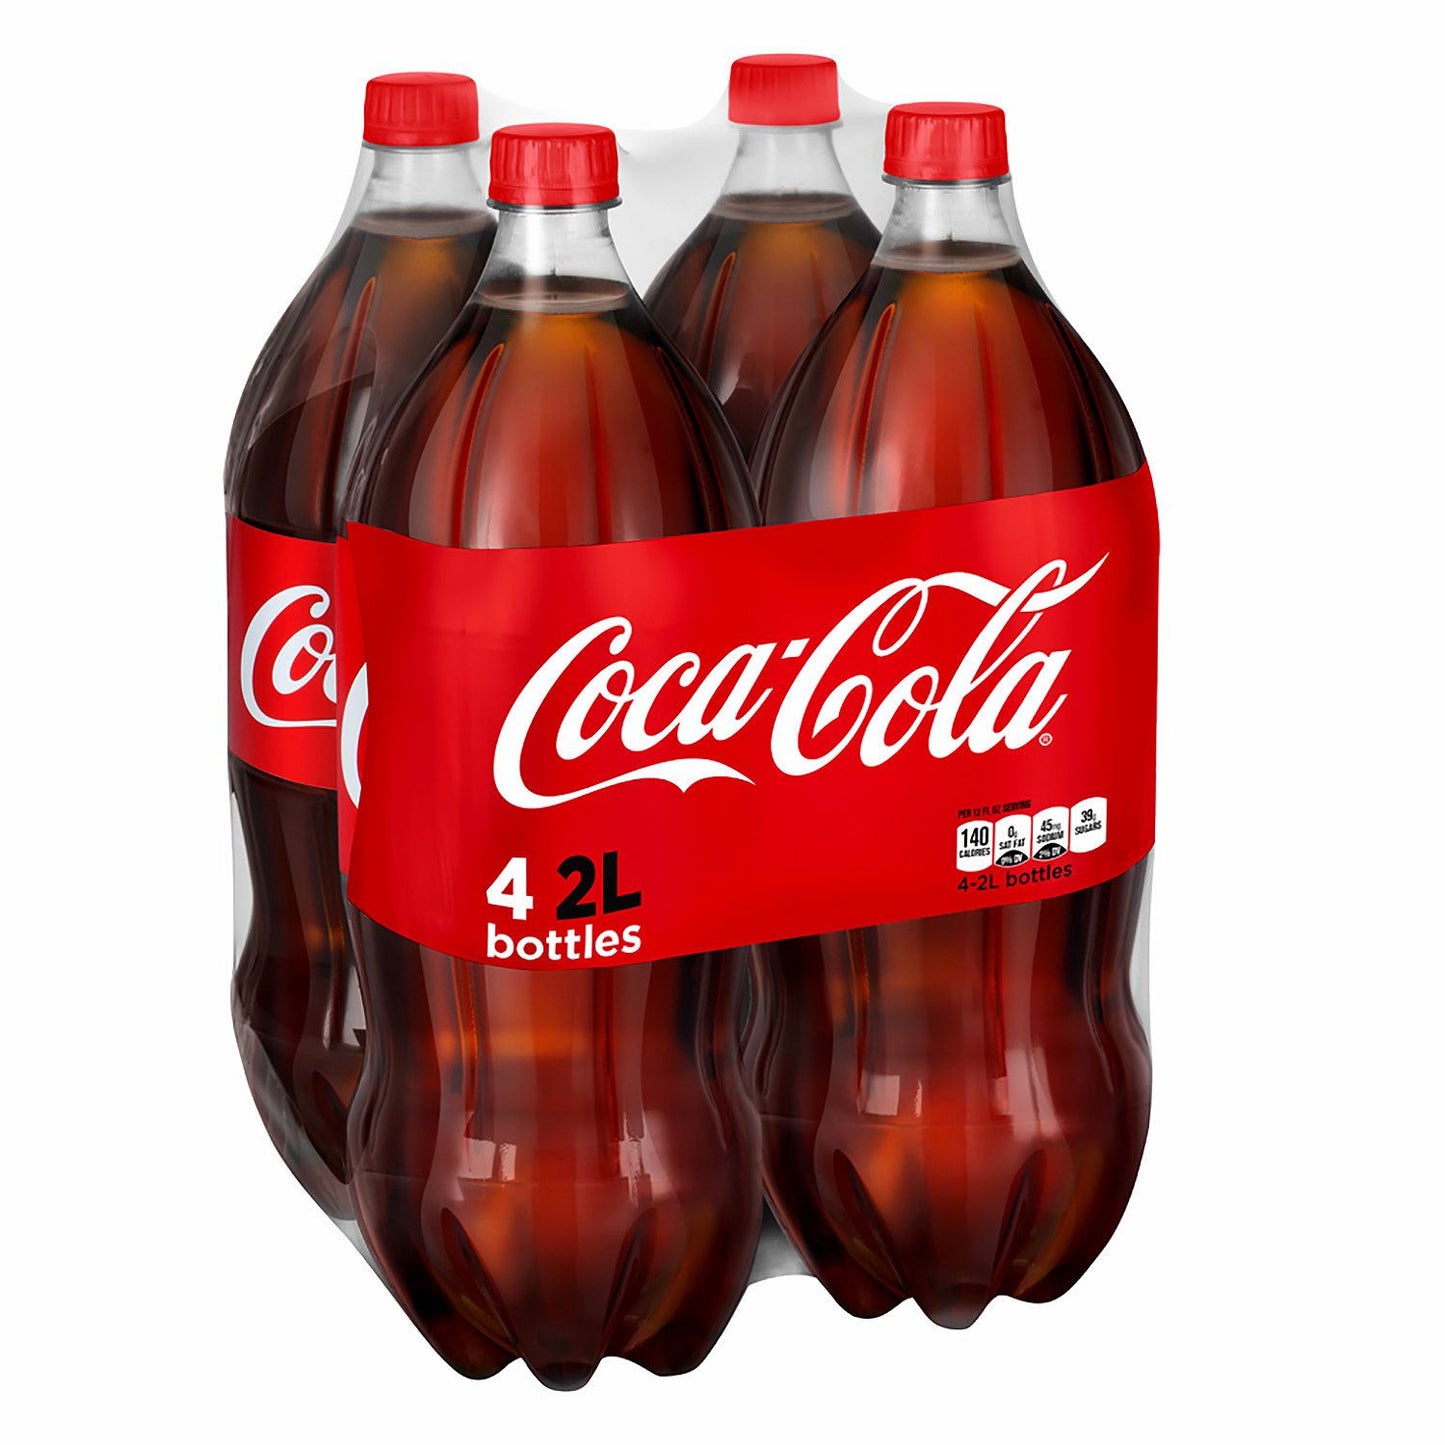 Coca-Cola Coke (2L bottles, 4 pk.)